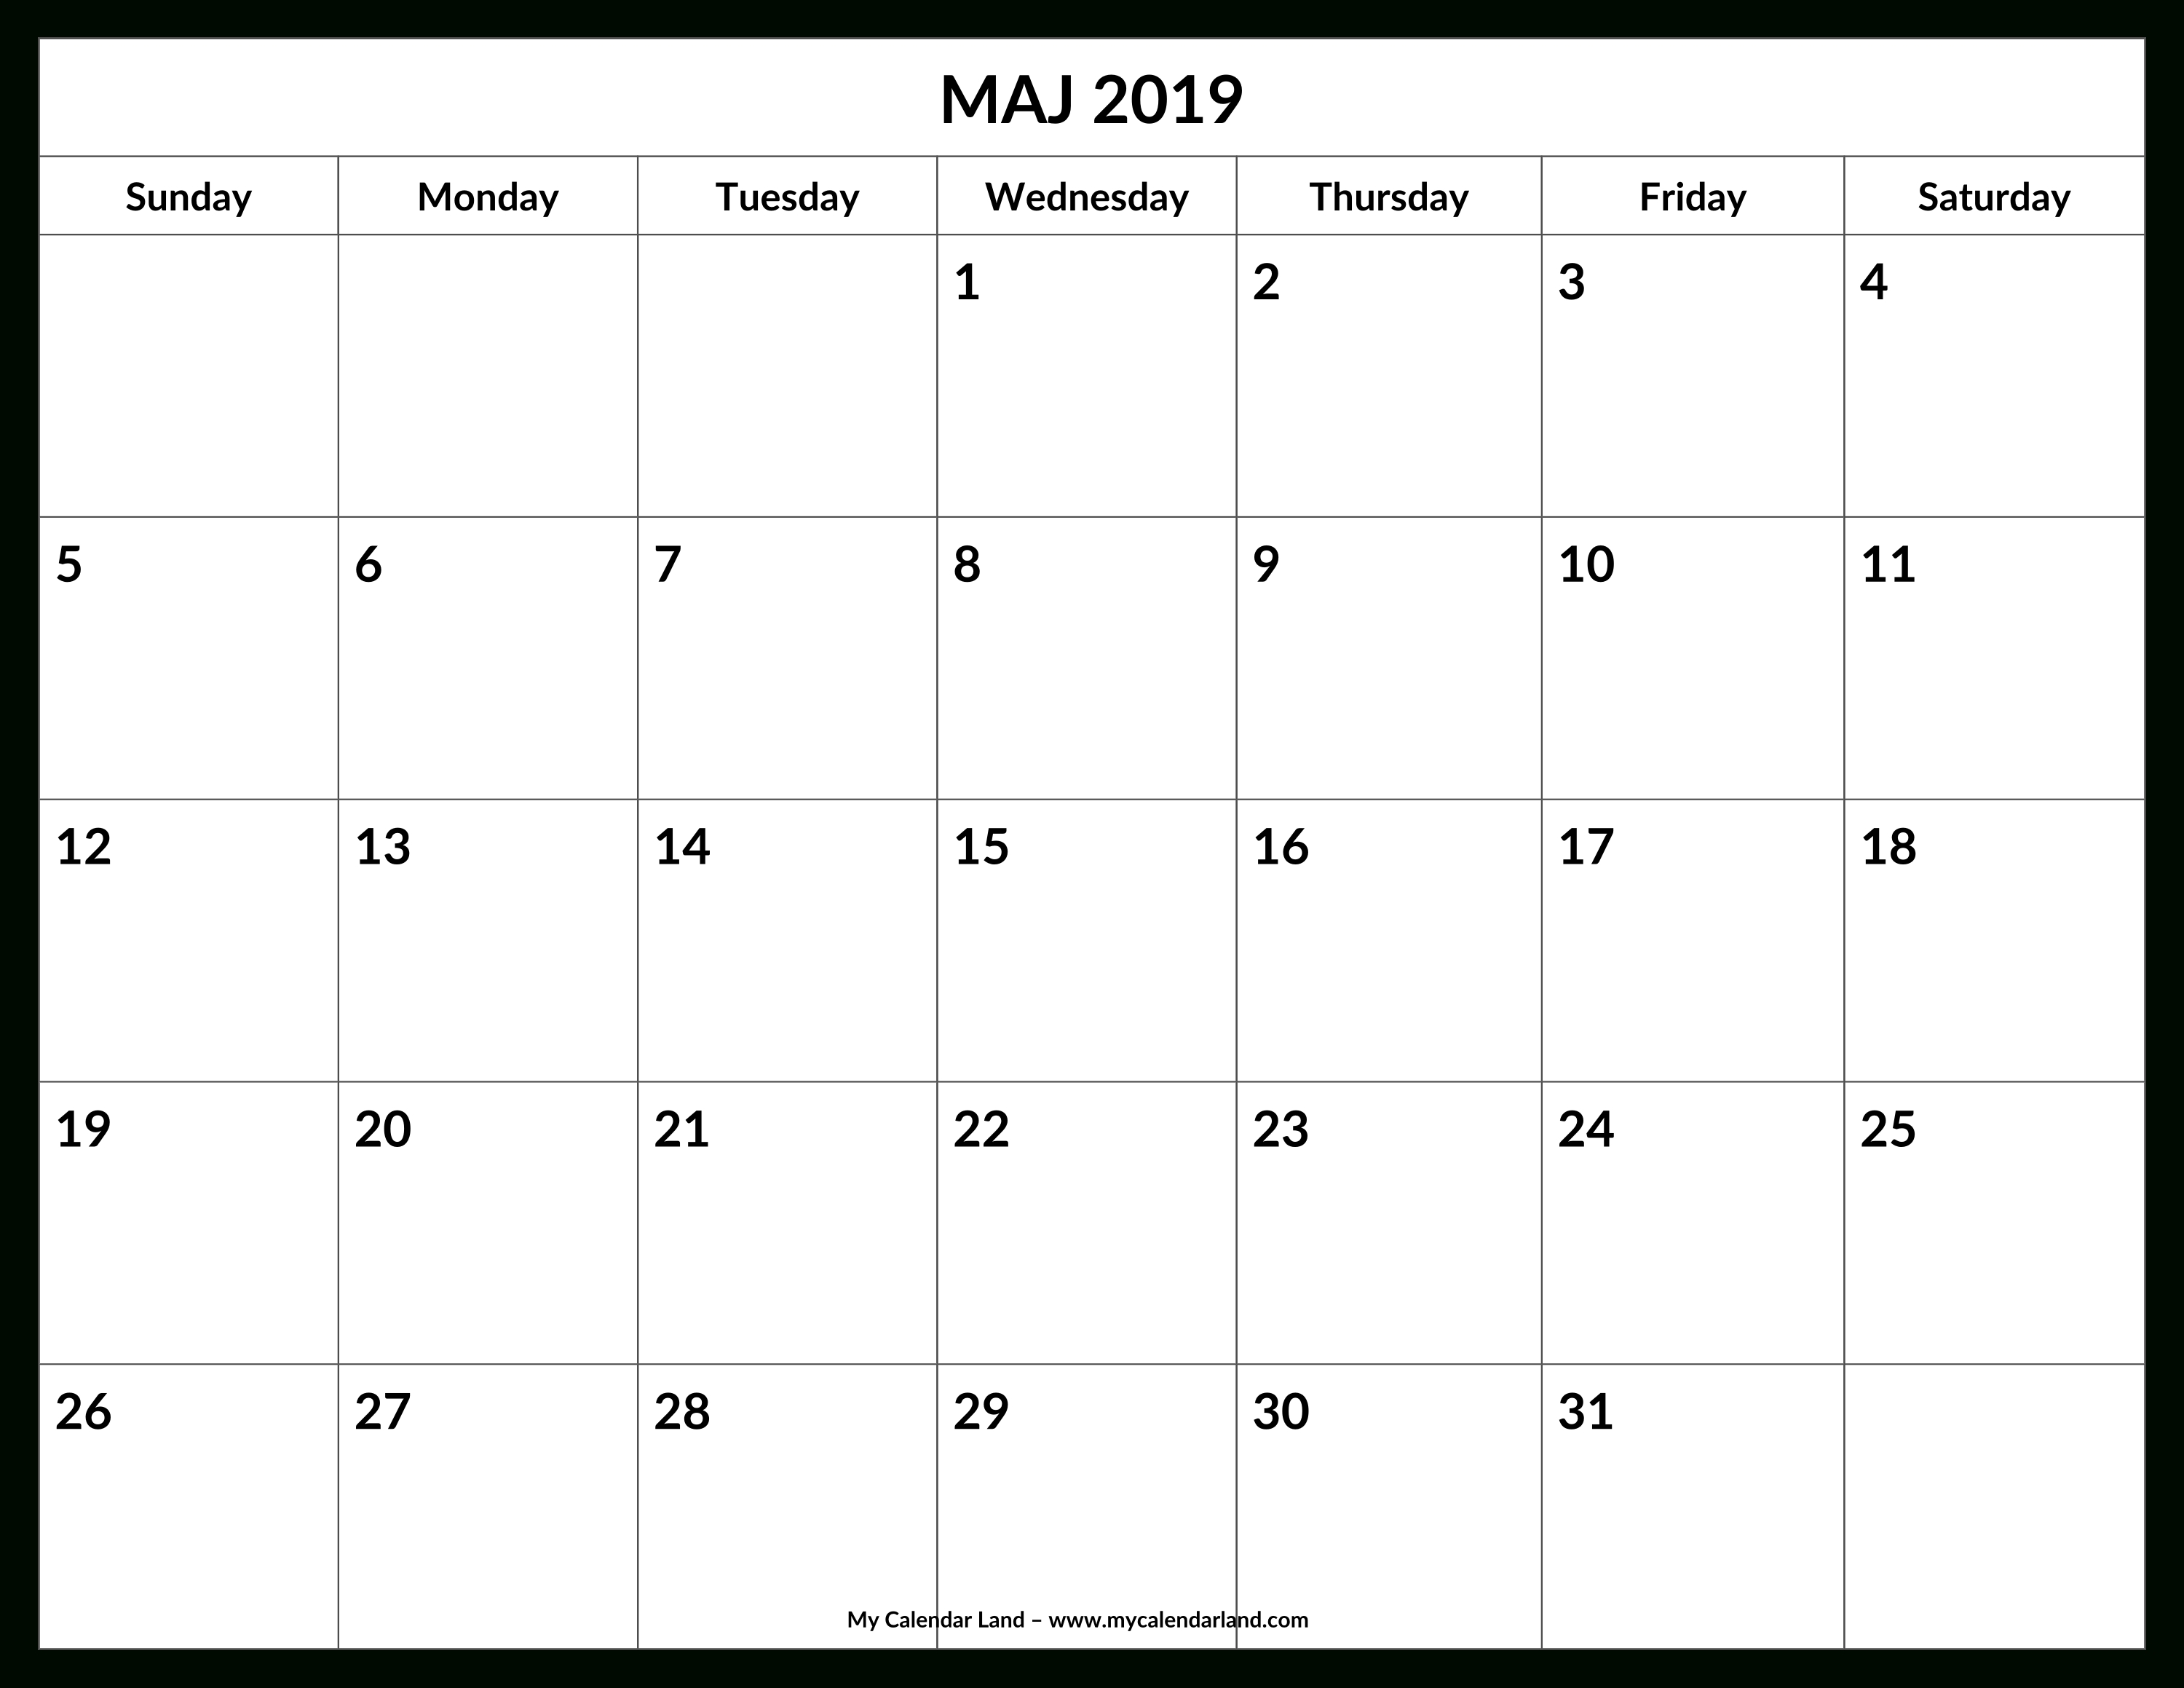 May 2019 Calendar - My Calendar Land-Beach Calendar With Blanks